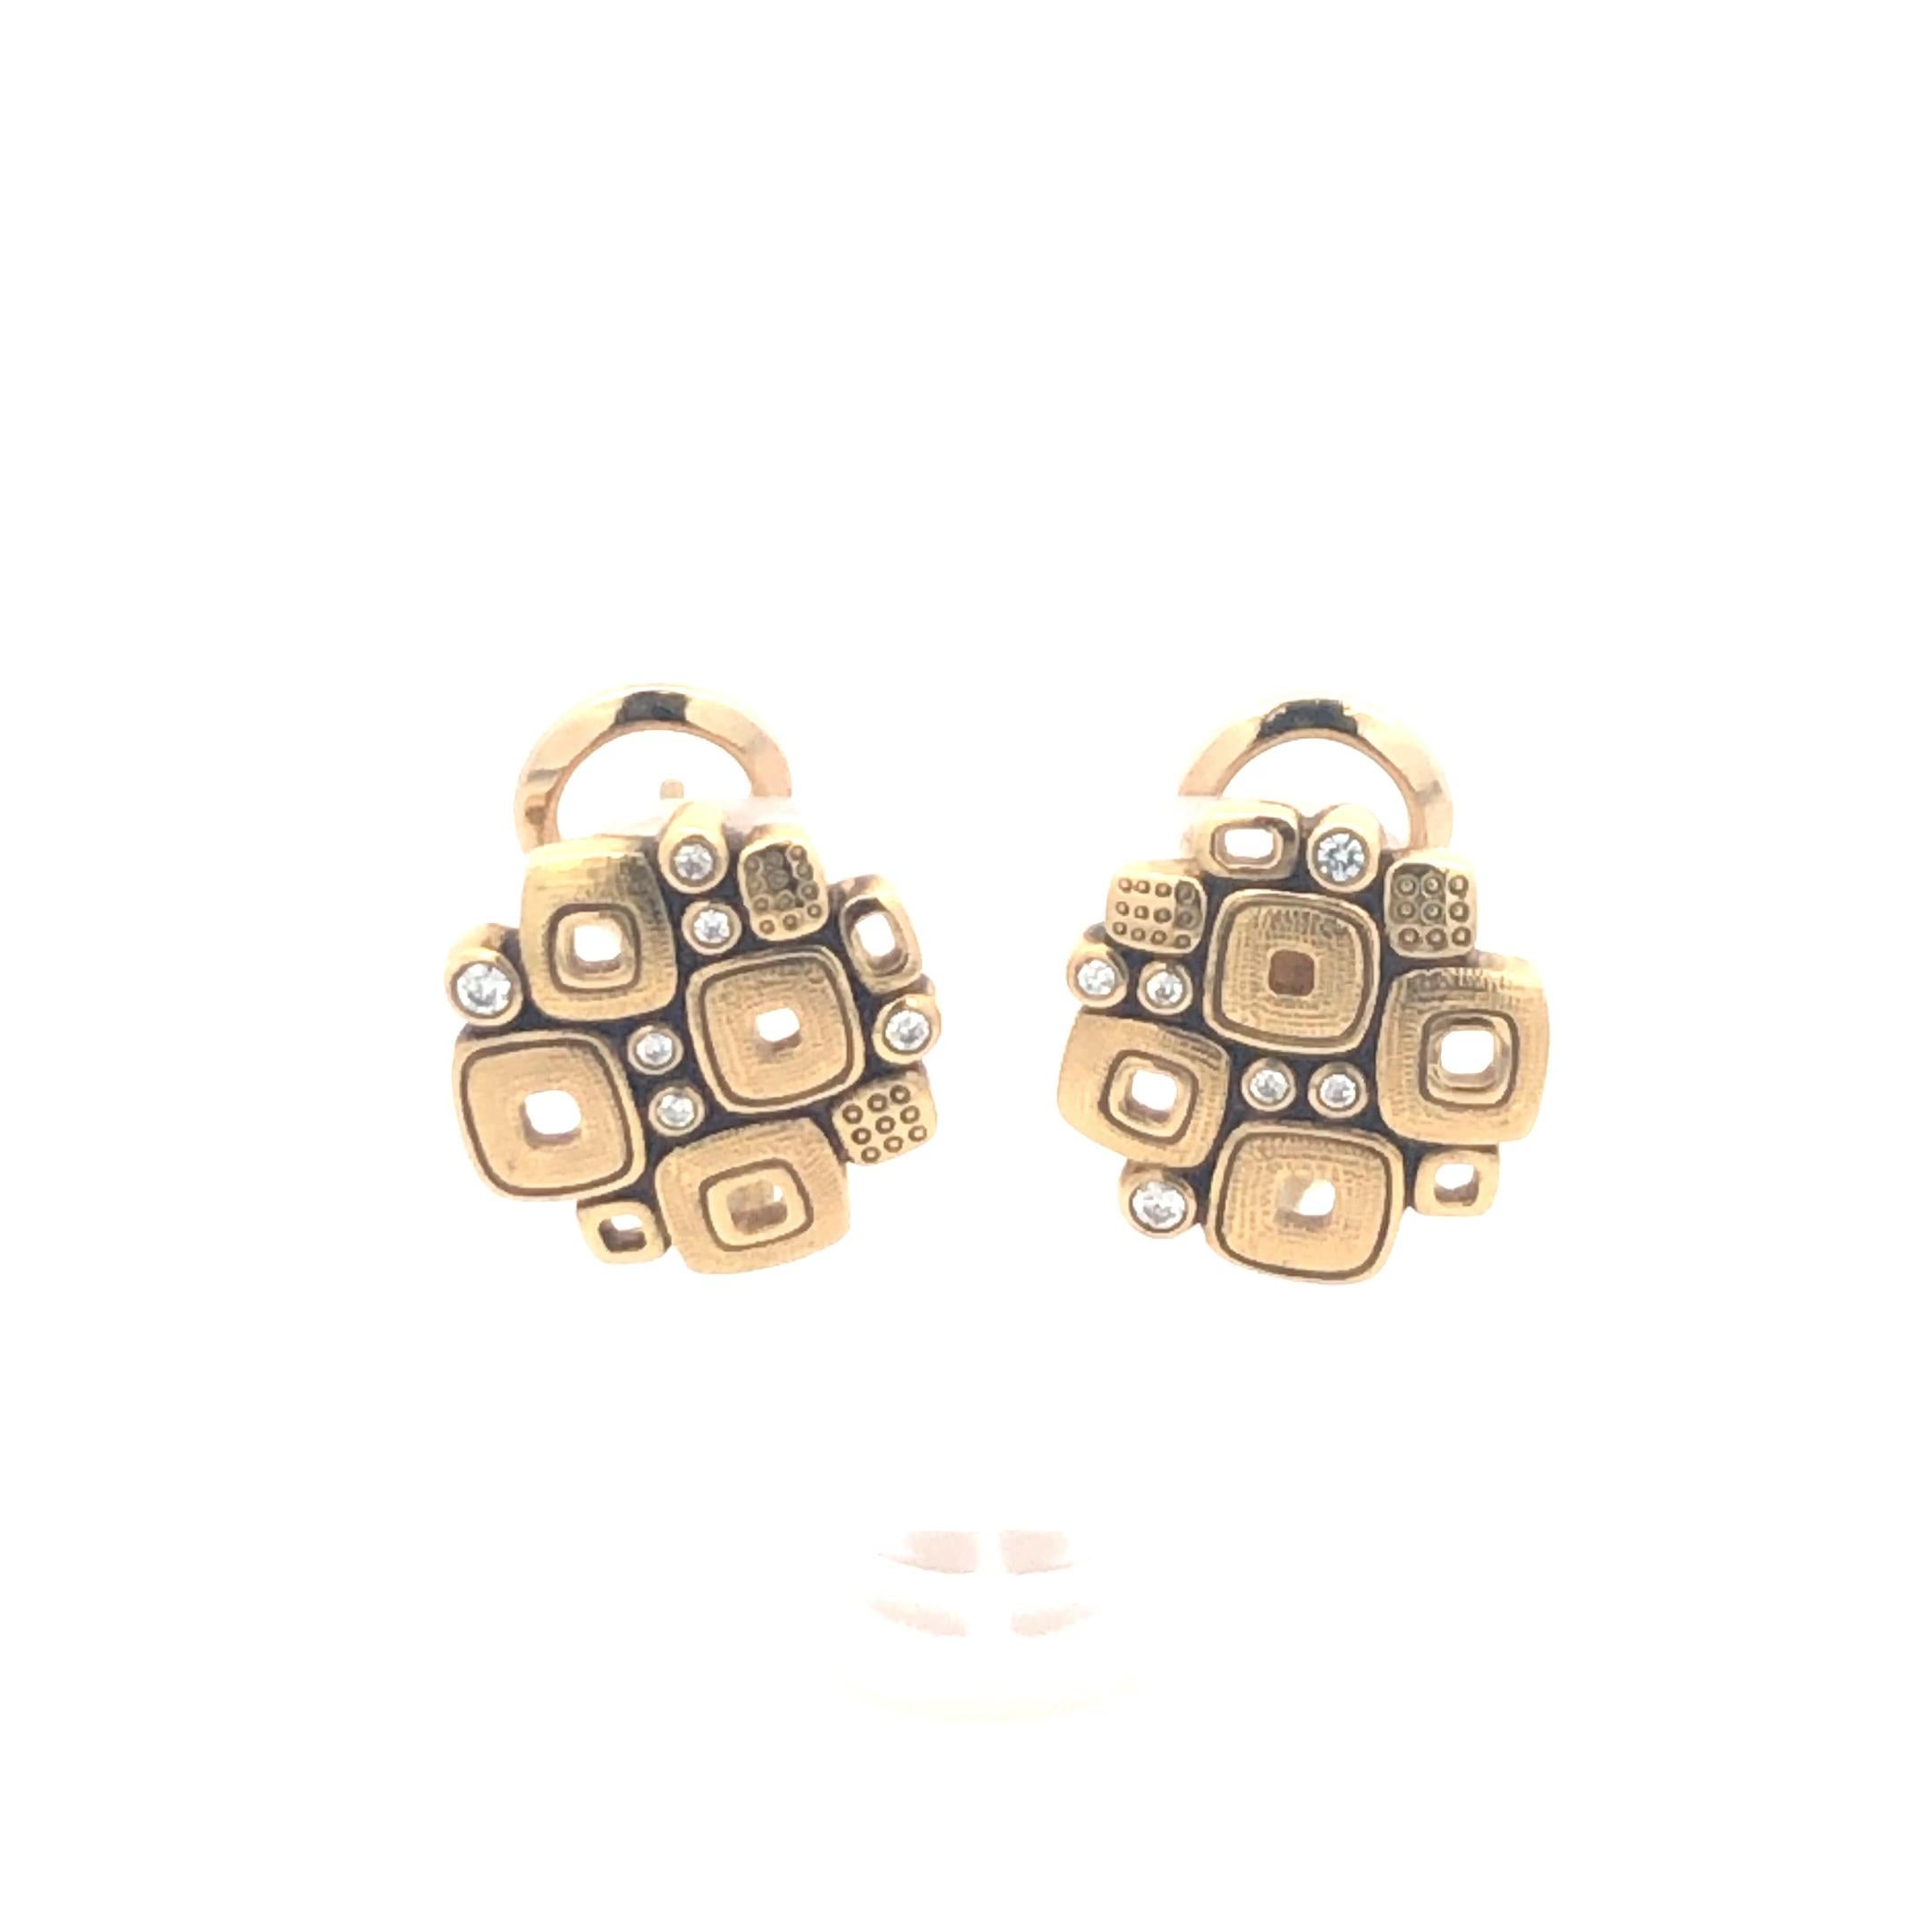 Alex Sepkus Kleine Fenster-Ohrringe.
Die Ohrringe verfügen über 12 runde Diamanten mit einem Gesamtgewicht von 0,15 Karat. 18K Gelbgold, 7,1 Gramm. 0,54 Zoll im Durchmesser.